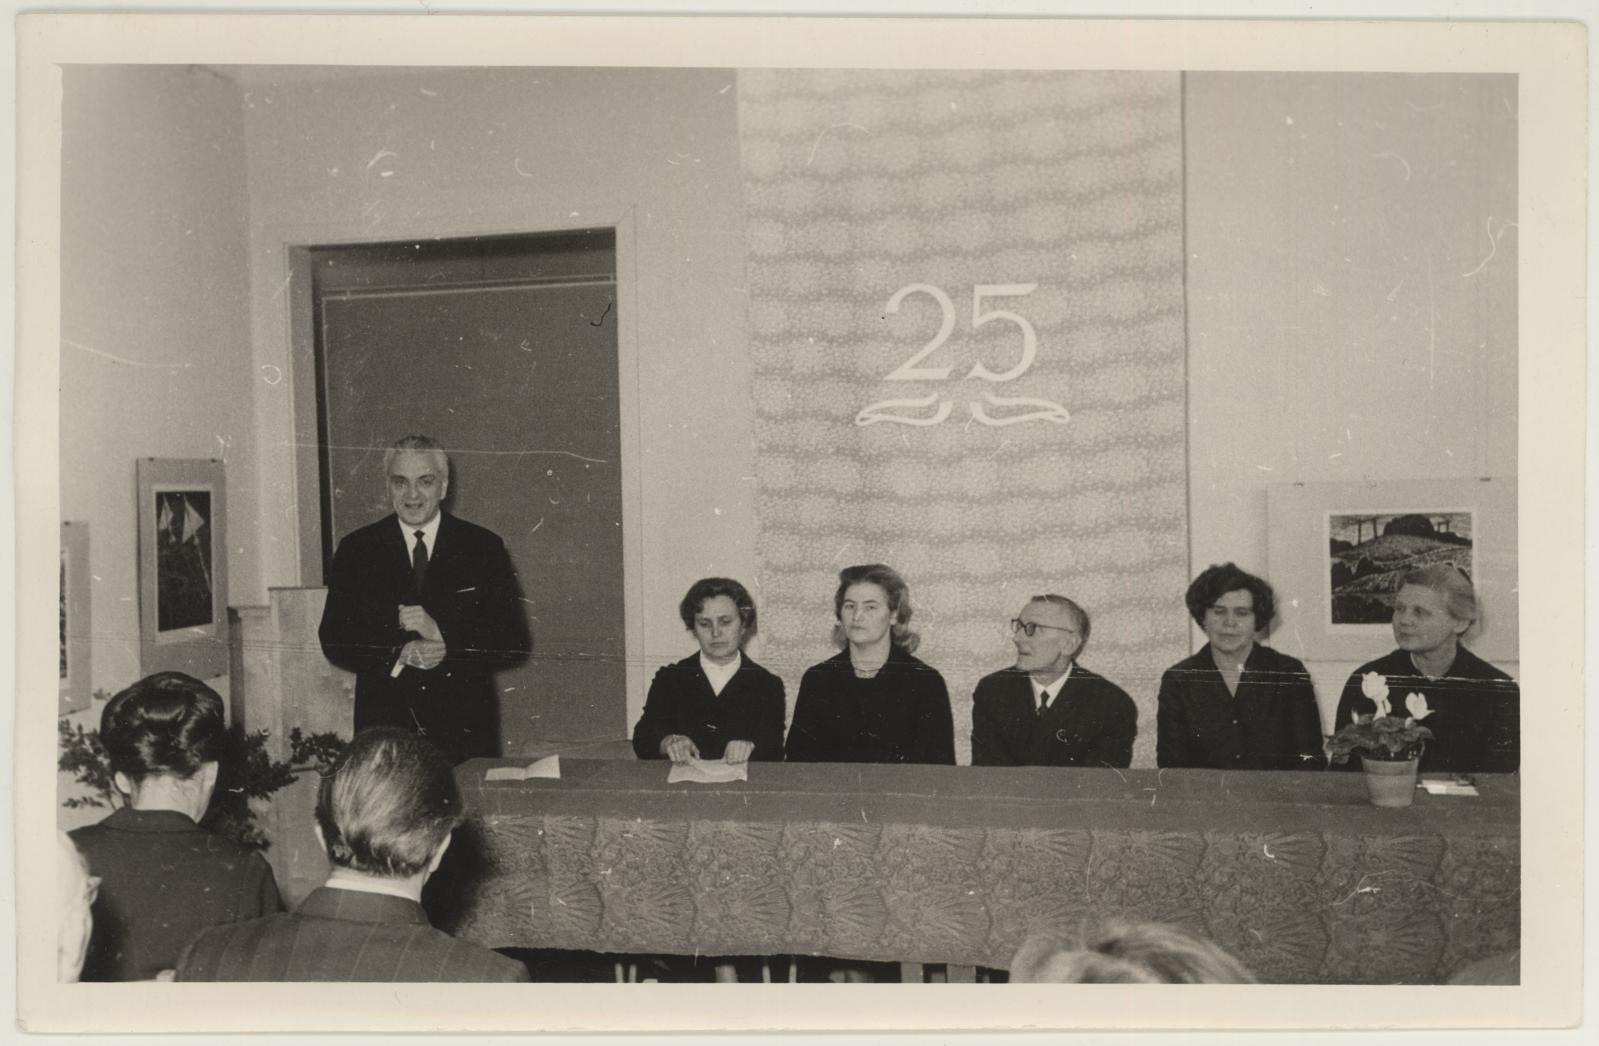 TKM-i III teaduslik konverents, millega tähistati muuseumi 25ndat aastapäeva 17.-18. nov. 1965. Kultuuriminister Albert Laus avab konverentsi.